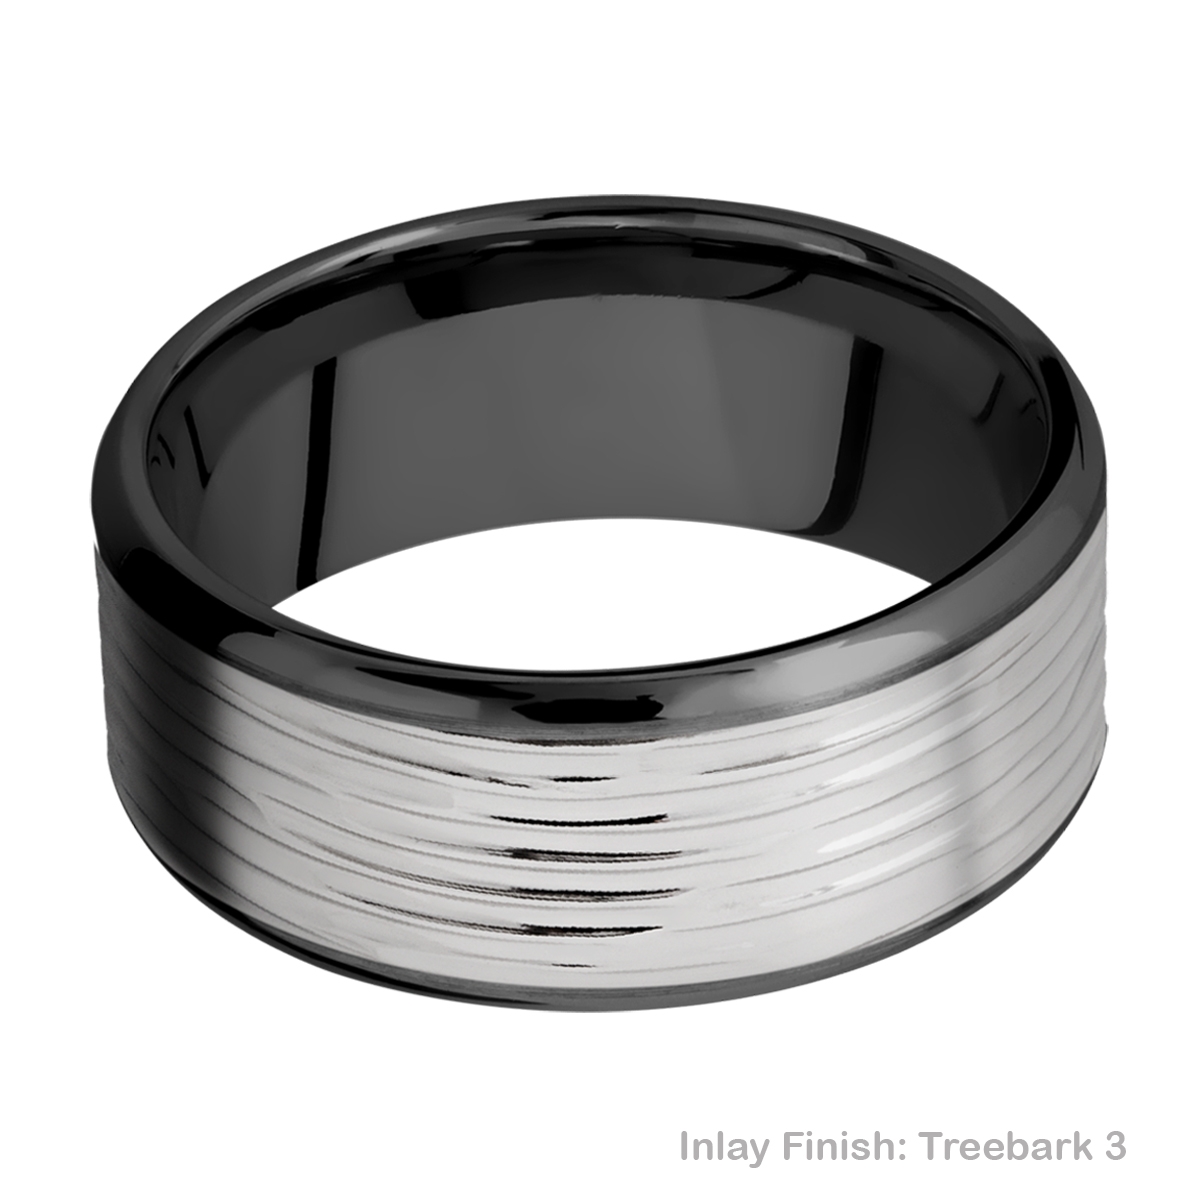 Lashbrook ZPF10B18(NS)/TITANIUM Zirconium Wedding Ring or Band